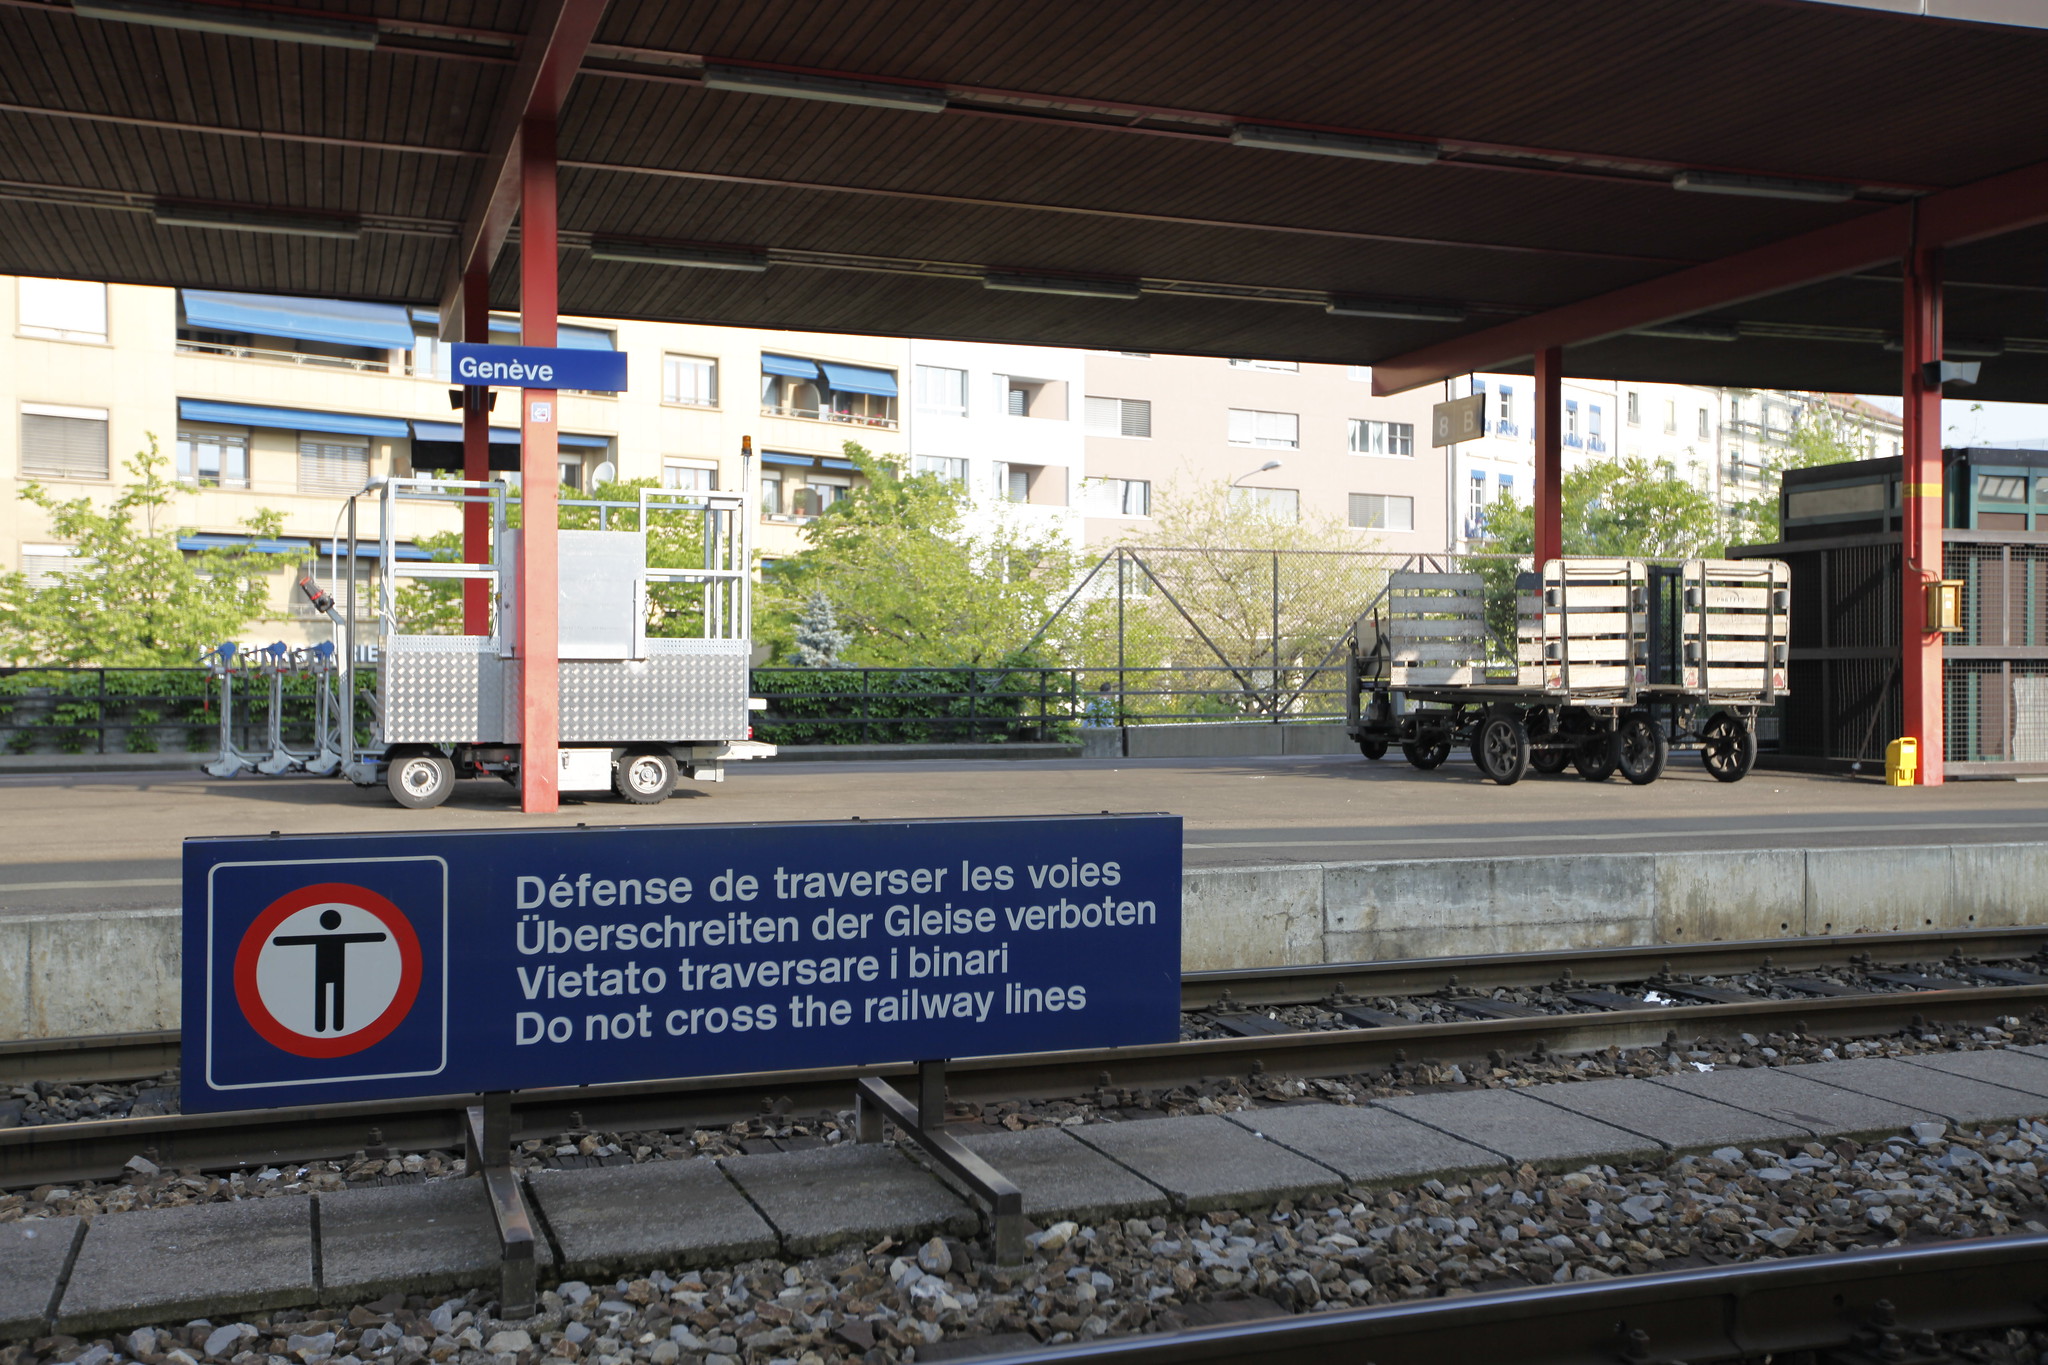 Platform and warning sign at Genève station